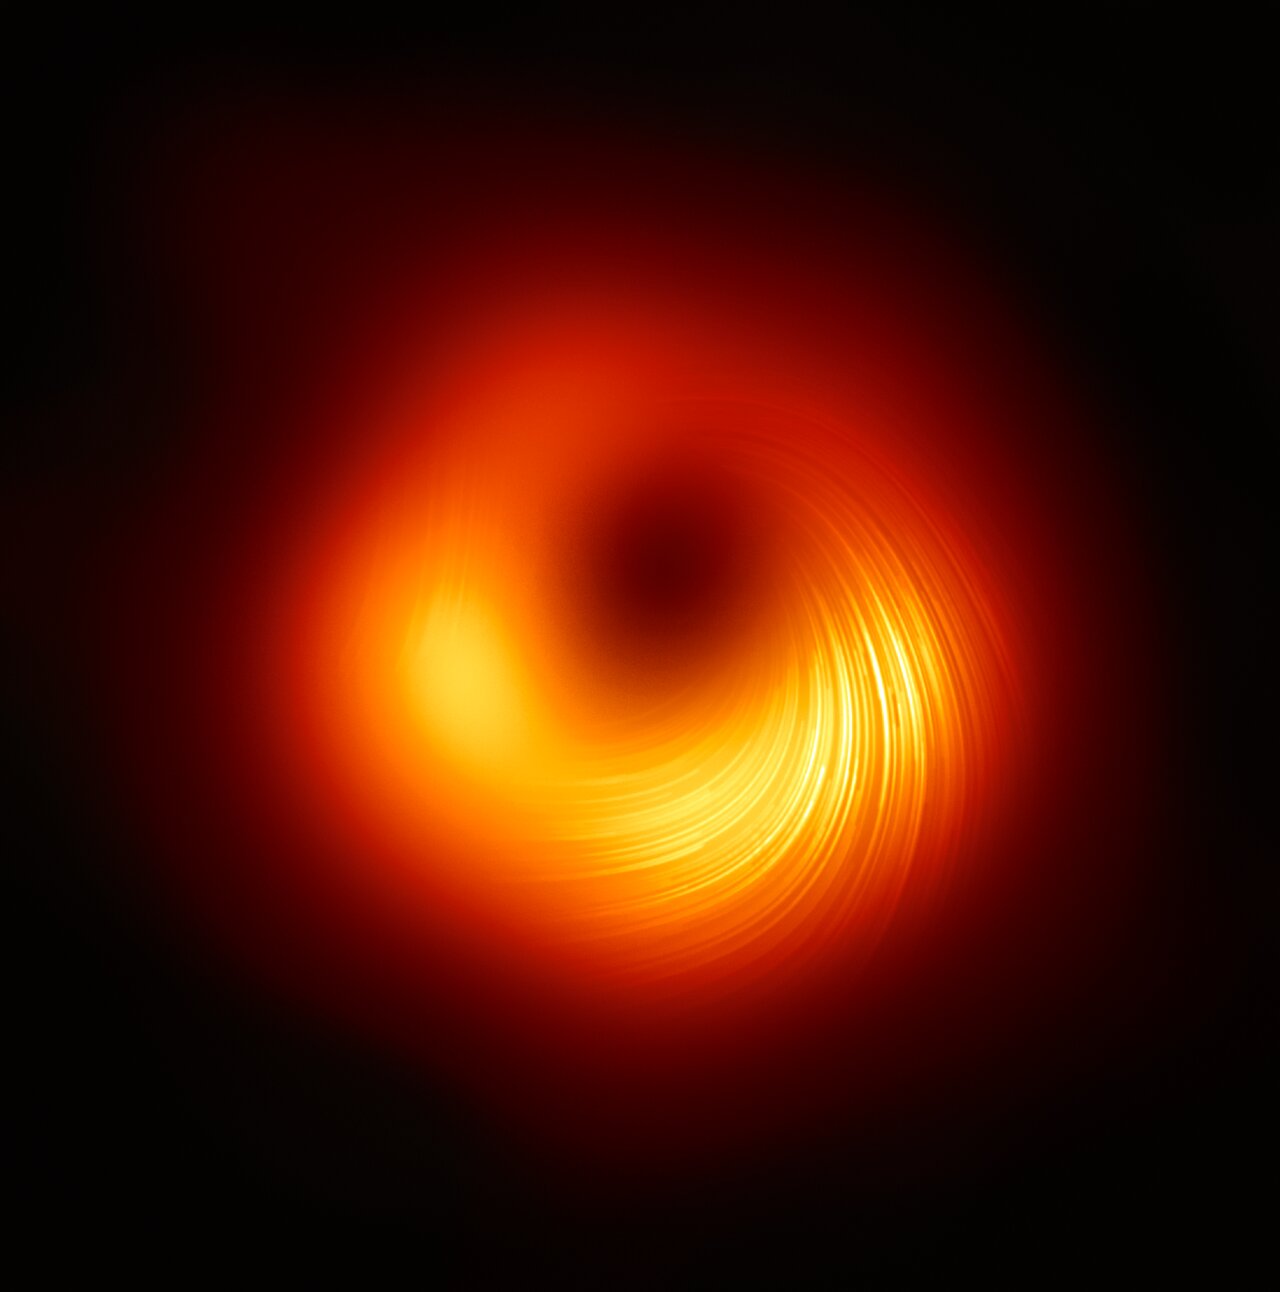 Image for the paper "Kerr black holes enjoy massive higher-spin gauge symmetry"